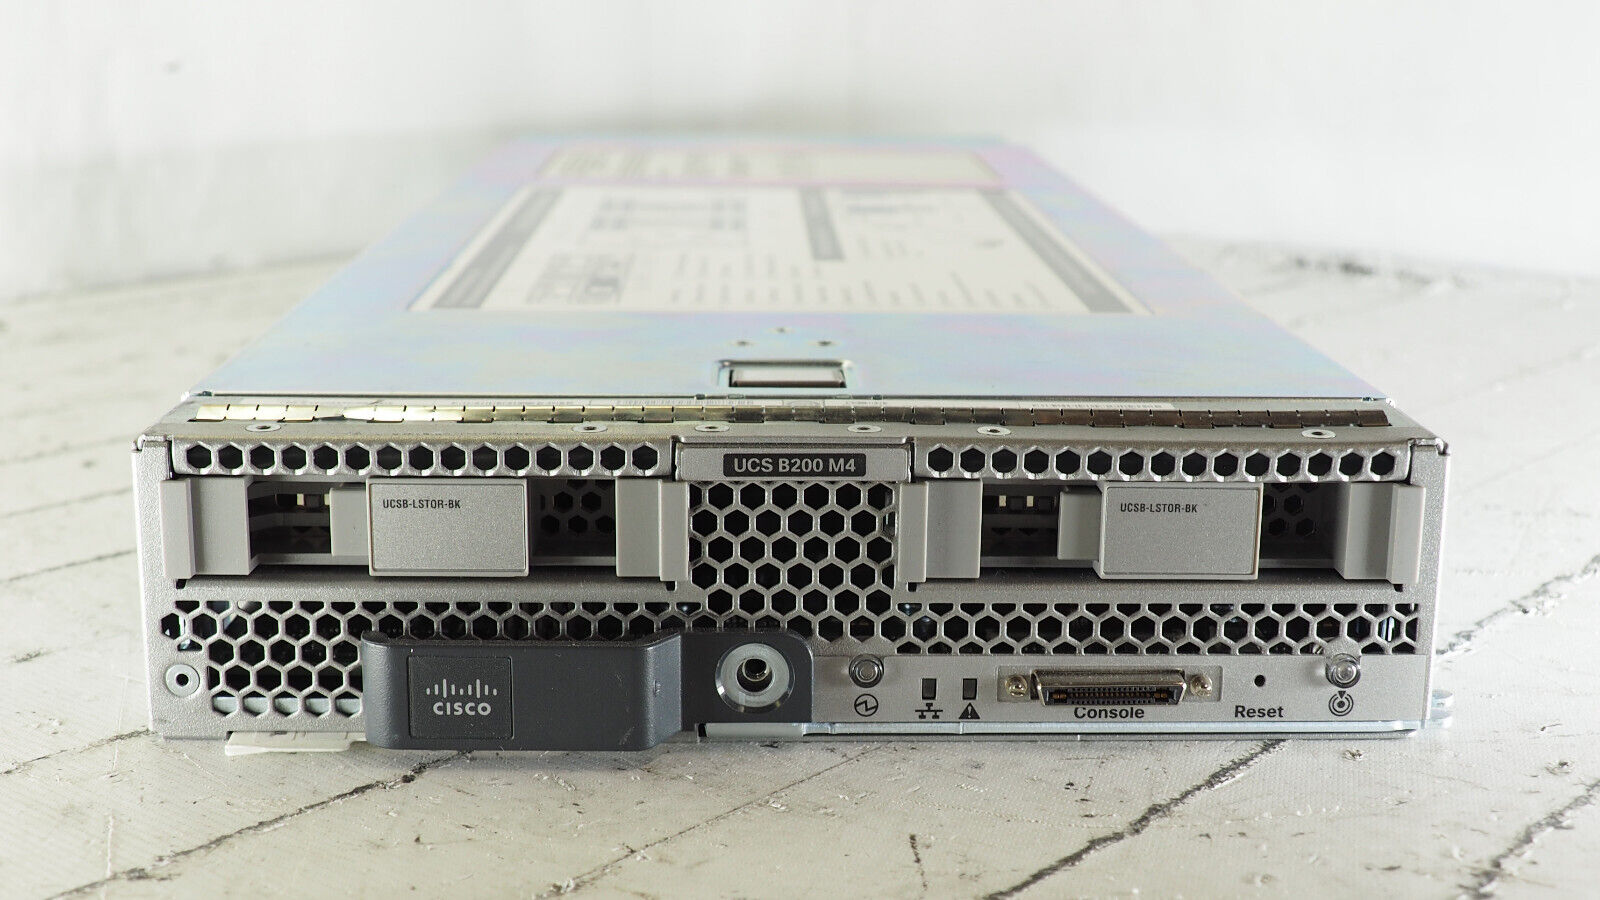 Cisco B200 M4 2 x E5-2660 V4 2.0GHz, 256GB RAM Blade Server, UCSB-B200-M4 V02